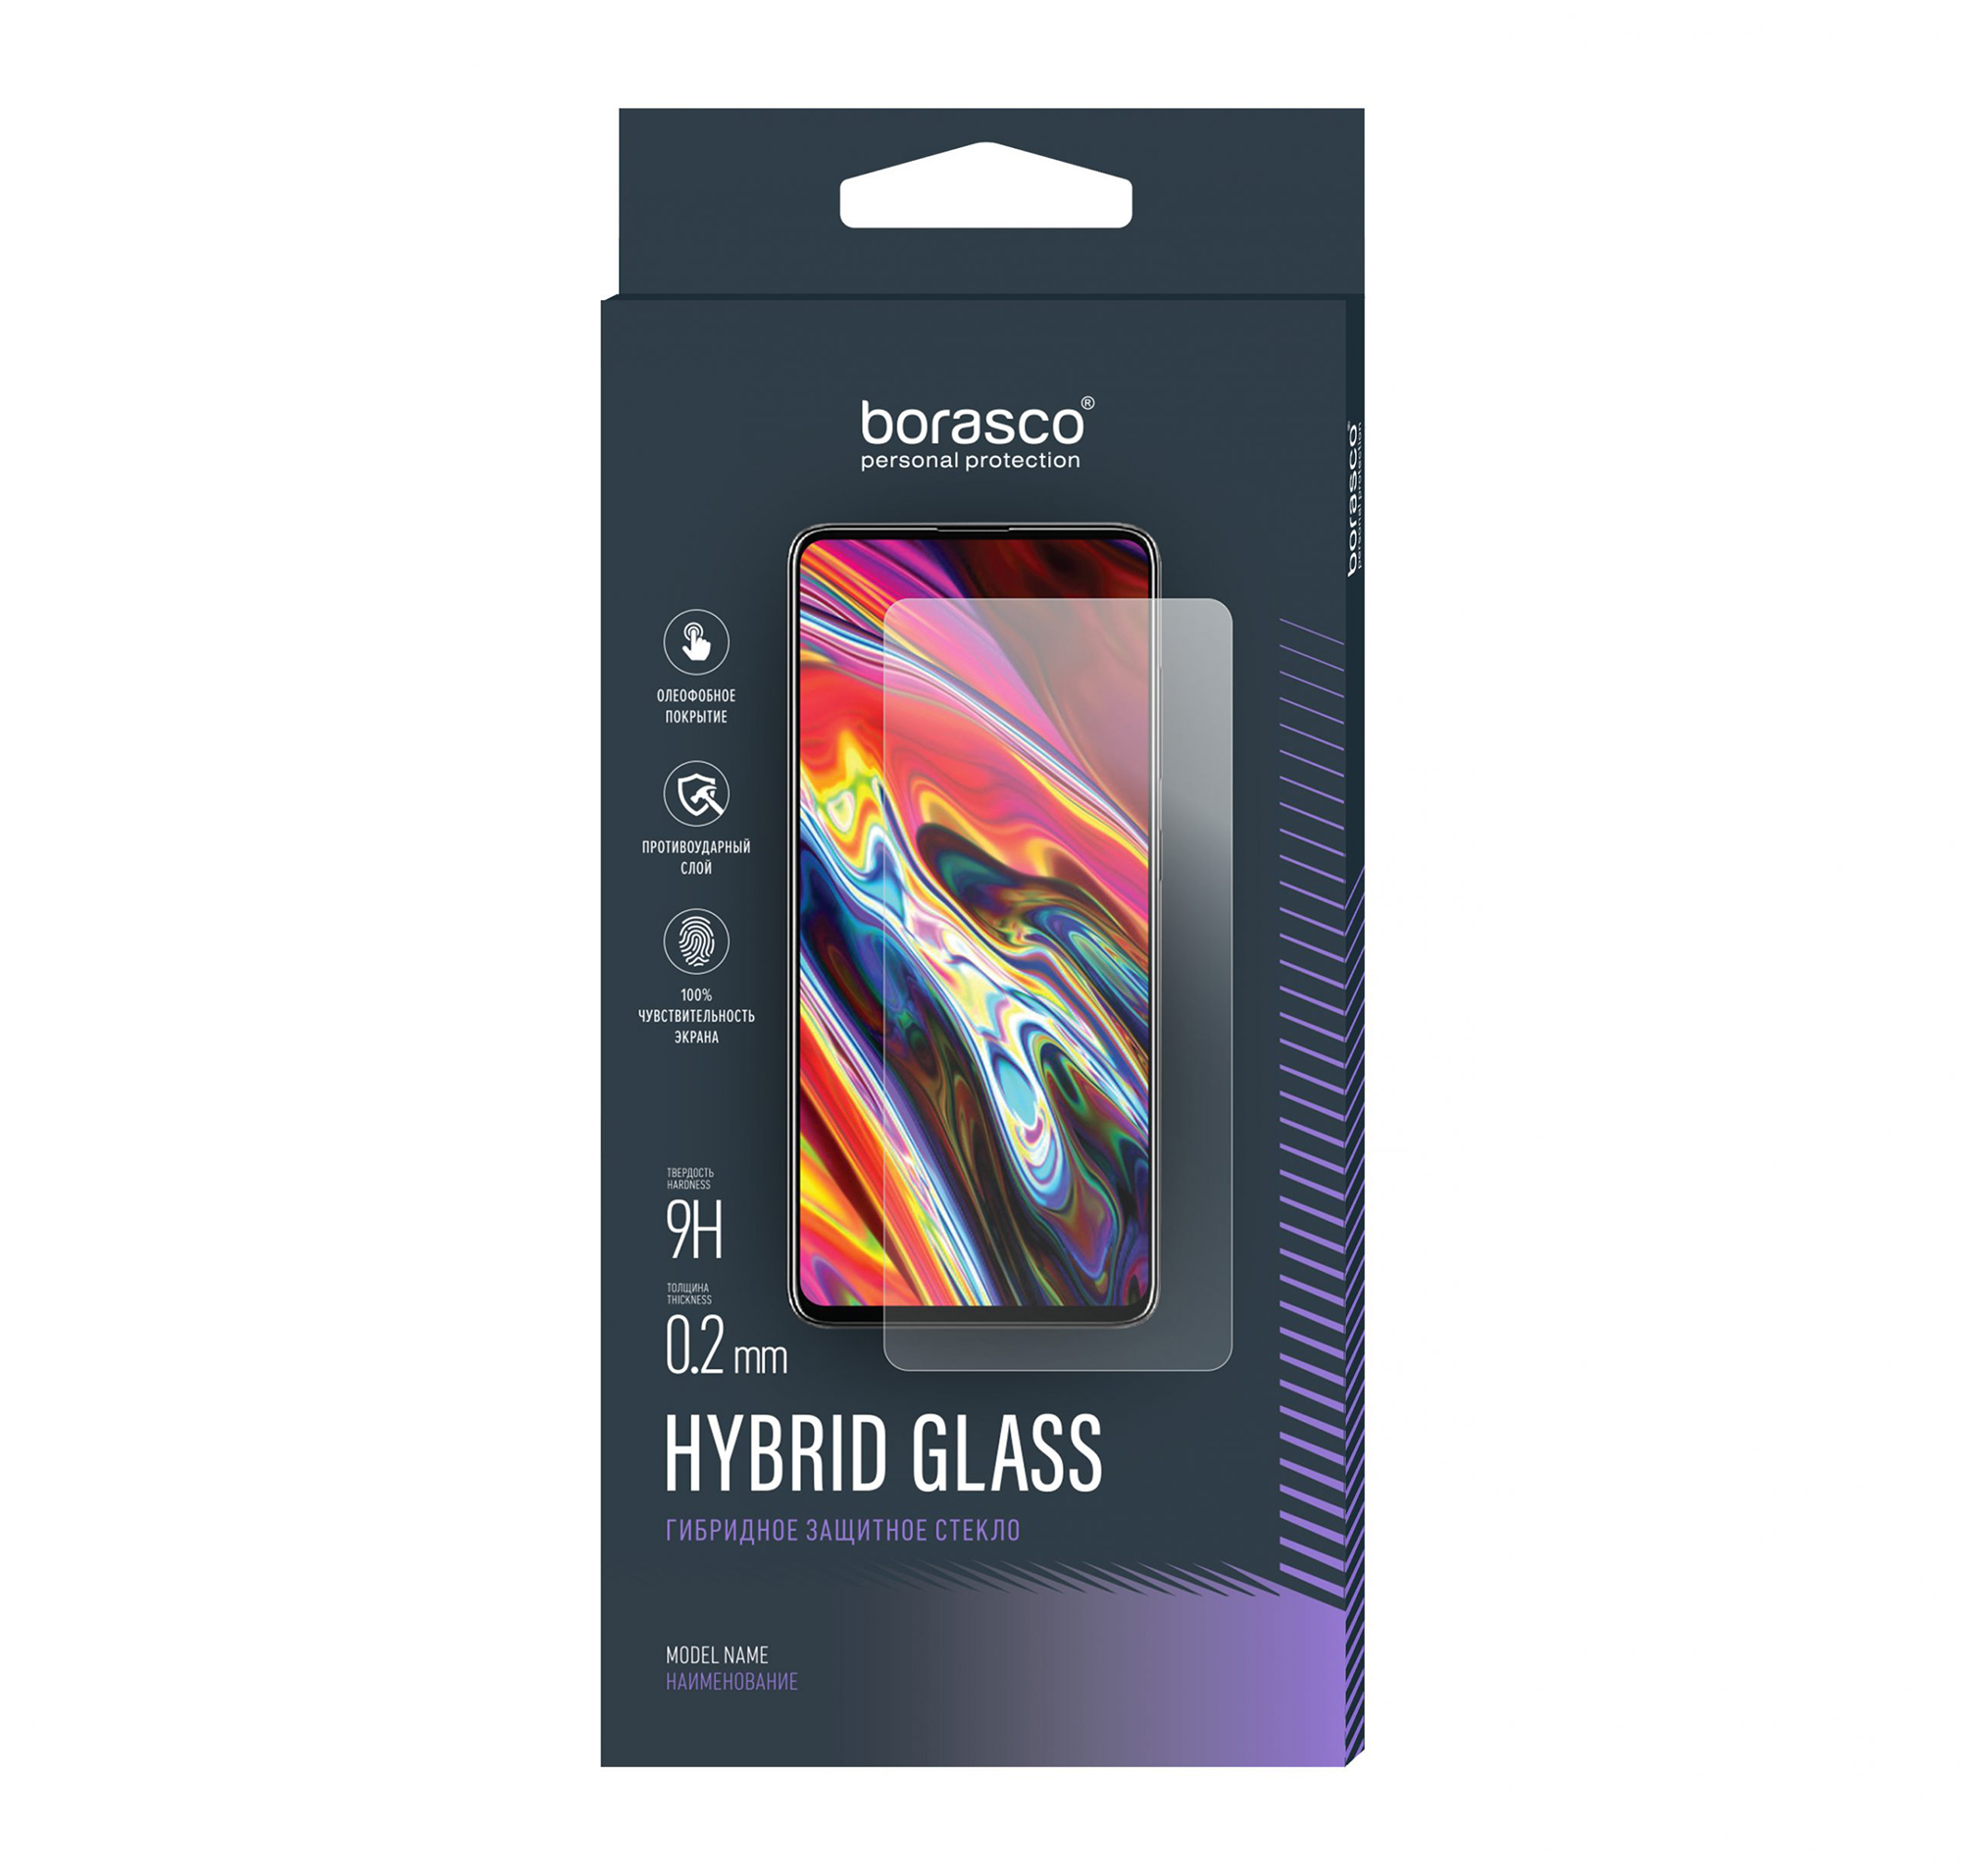 цена Защитное стекло Hybrid Glass для Huawei MediaPad T3 8